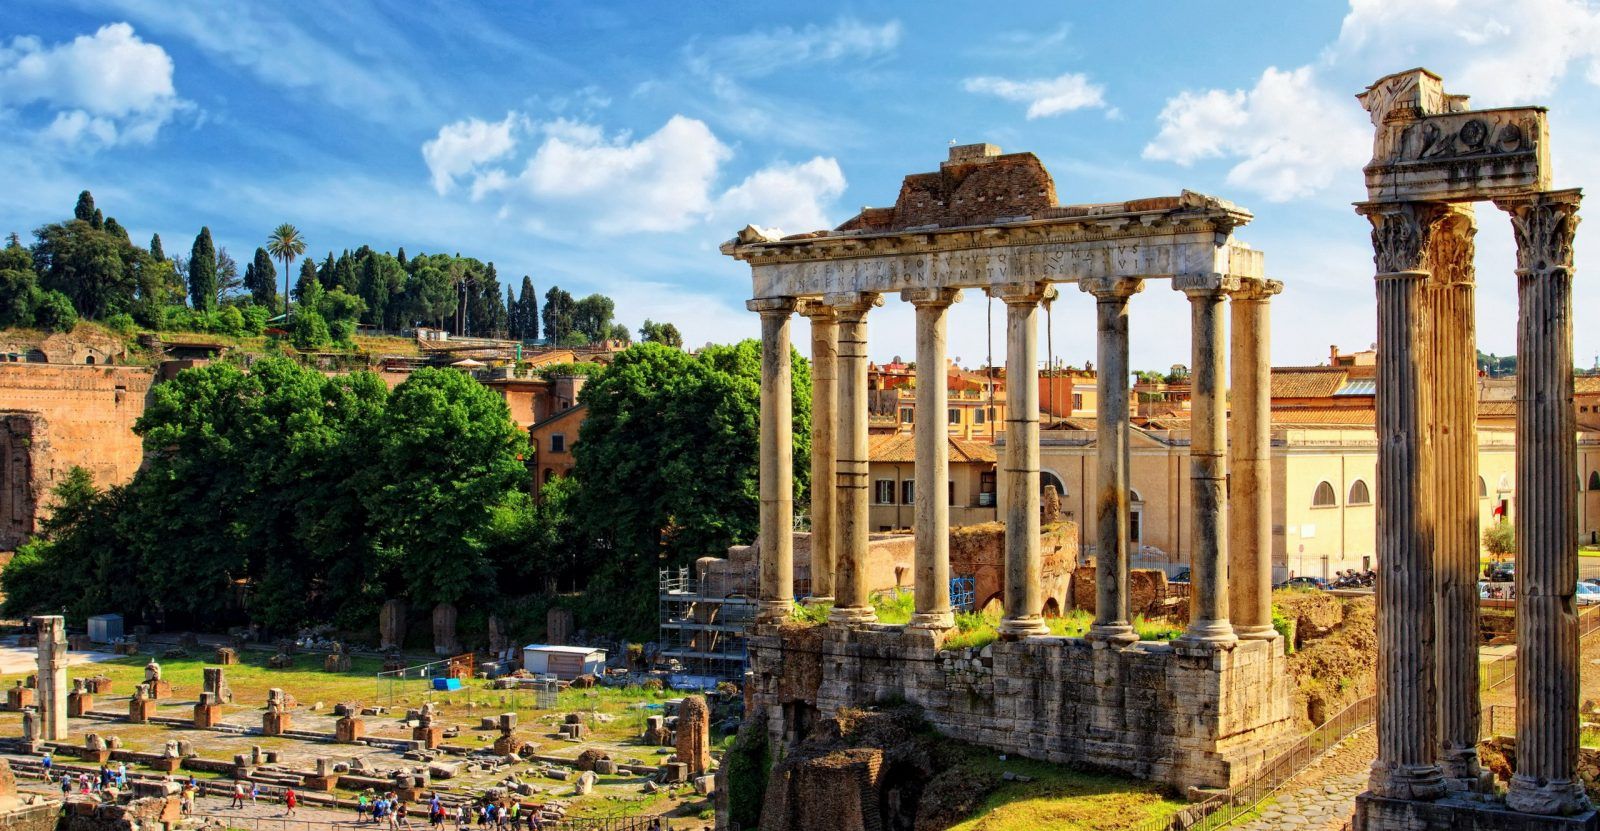 Римские колокола... Римский Форум — Форум в центре Древнего Рима, вместе с прилегающими зданиями. Первоначально на нём размещался рынок, позже он включил в себя комиций, курию, и приобрёл политические функции…